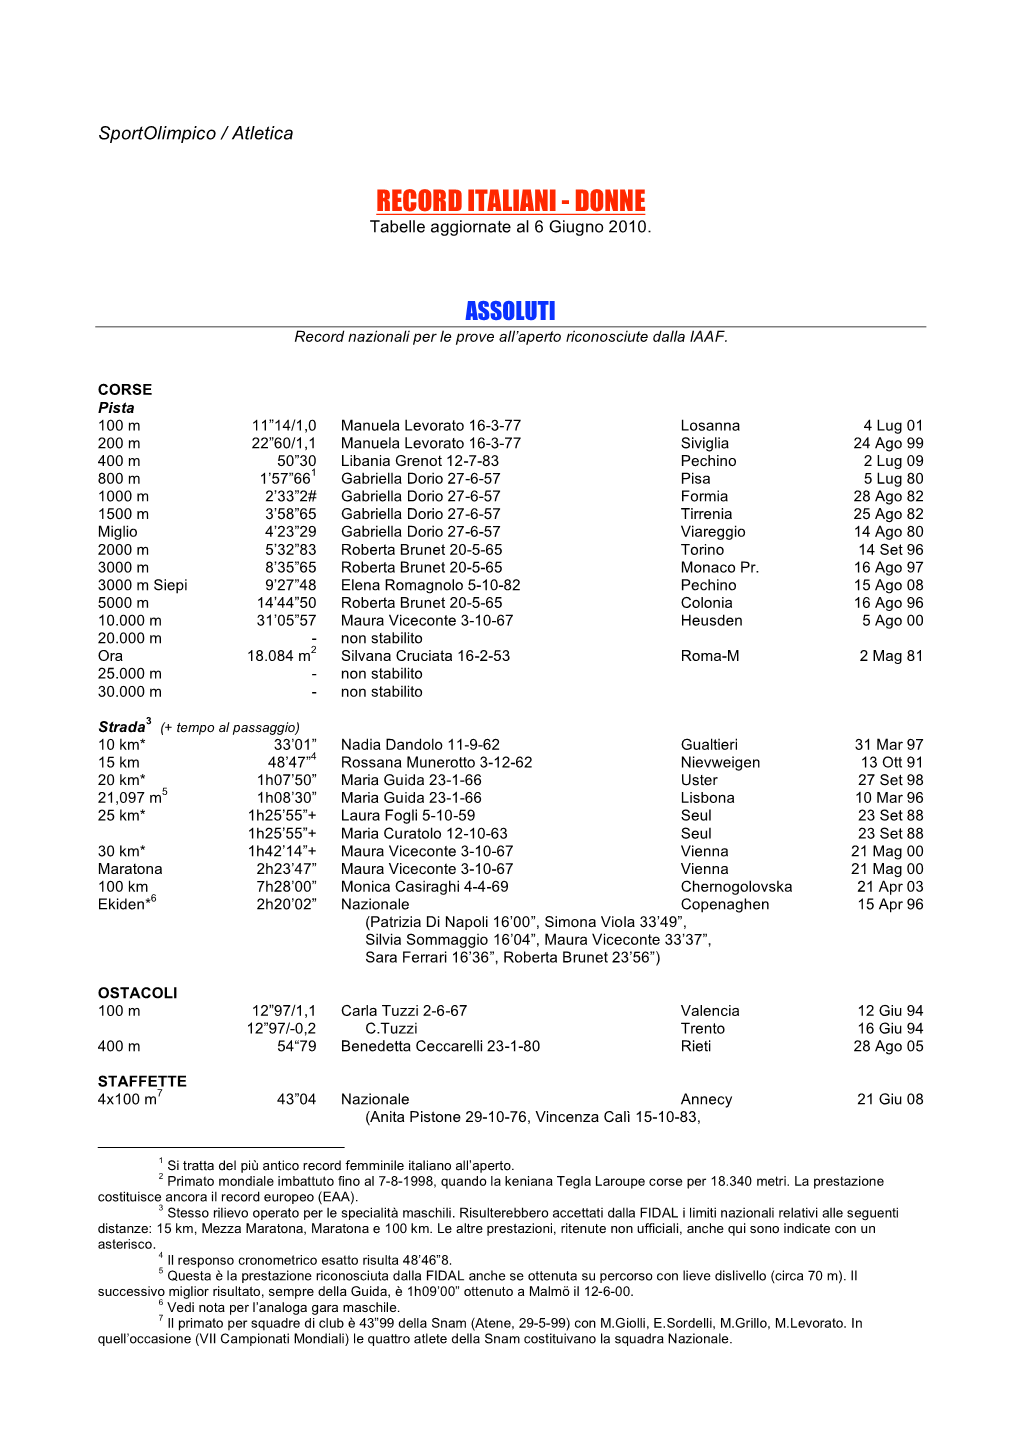 RECORD ITALIANI - DONNE Tabelle Aggiornate Al 6 Giugno 2010